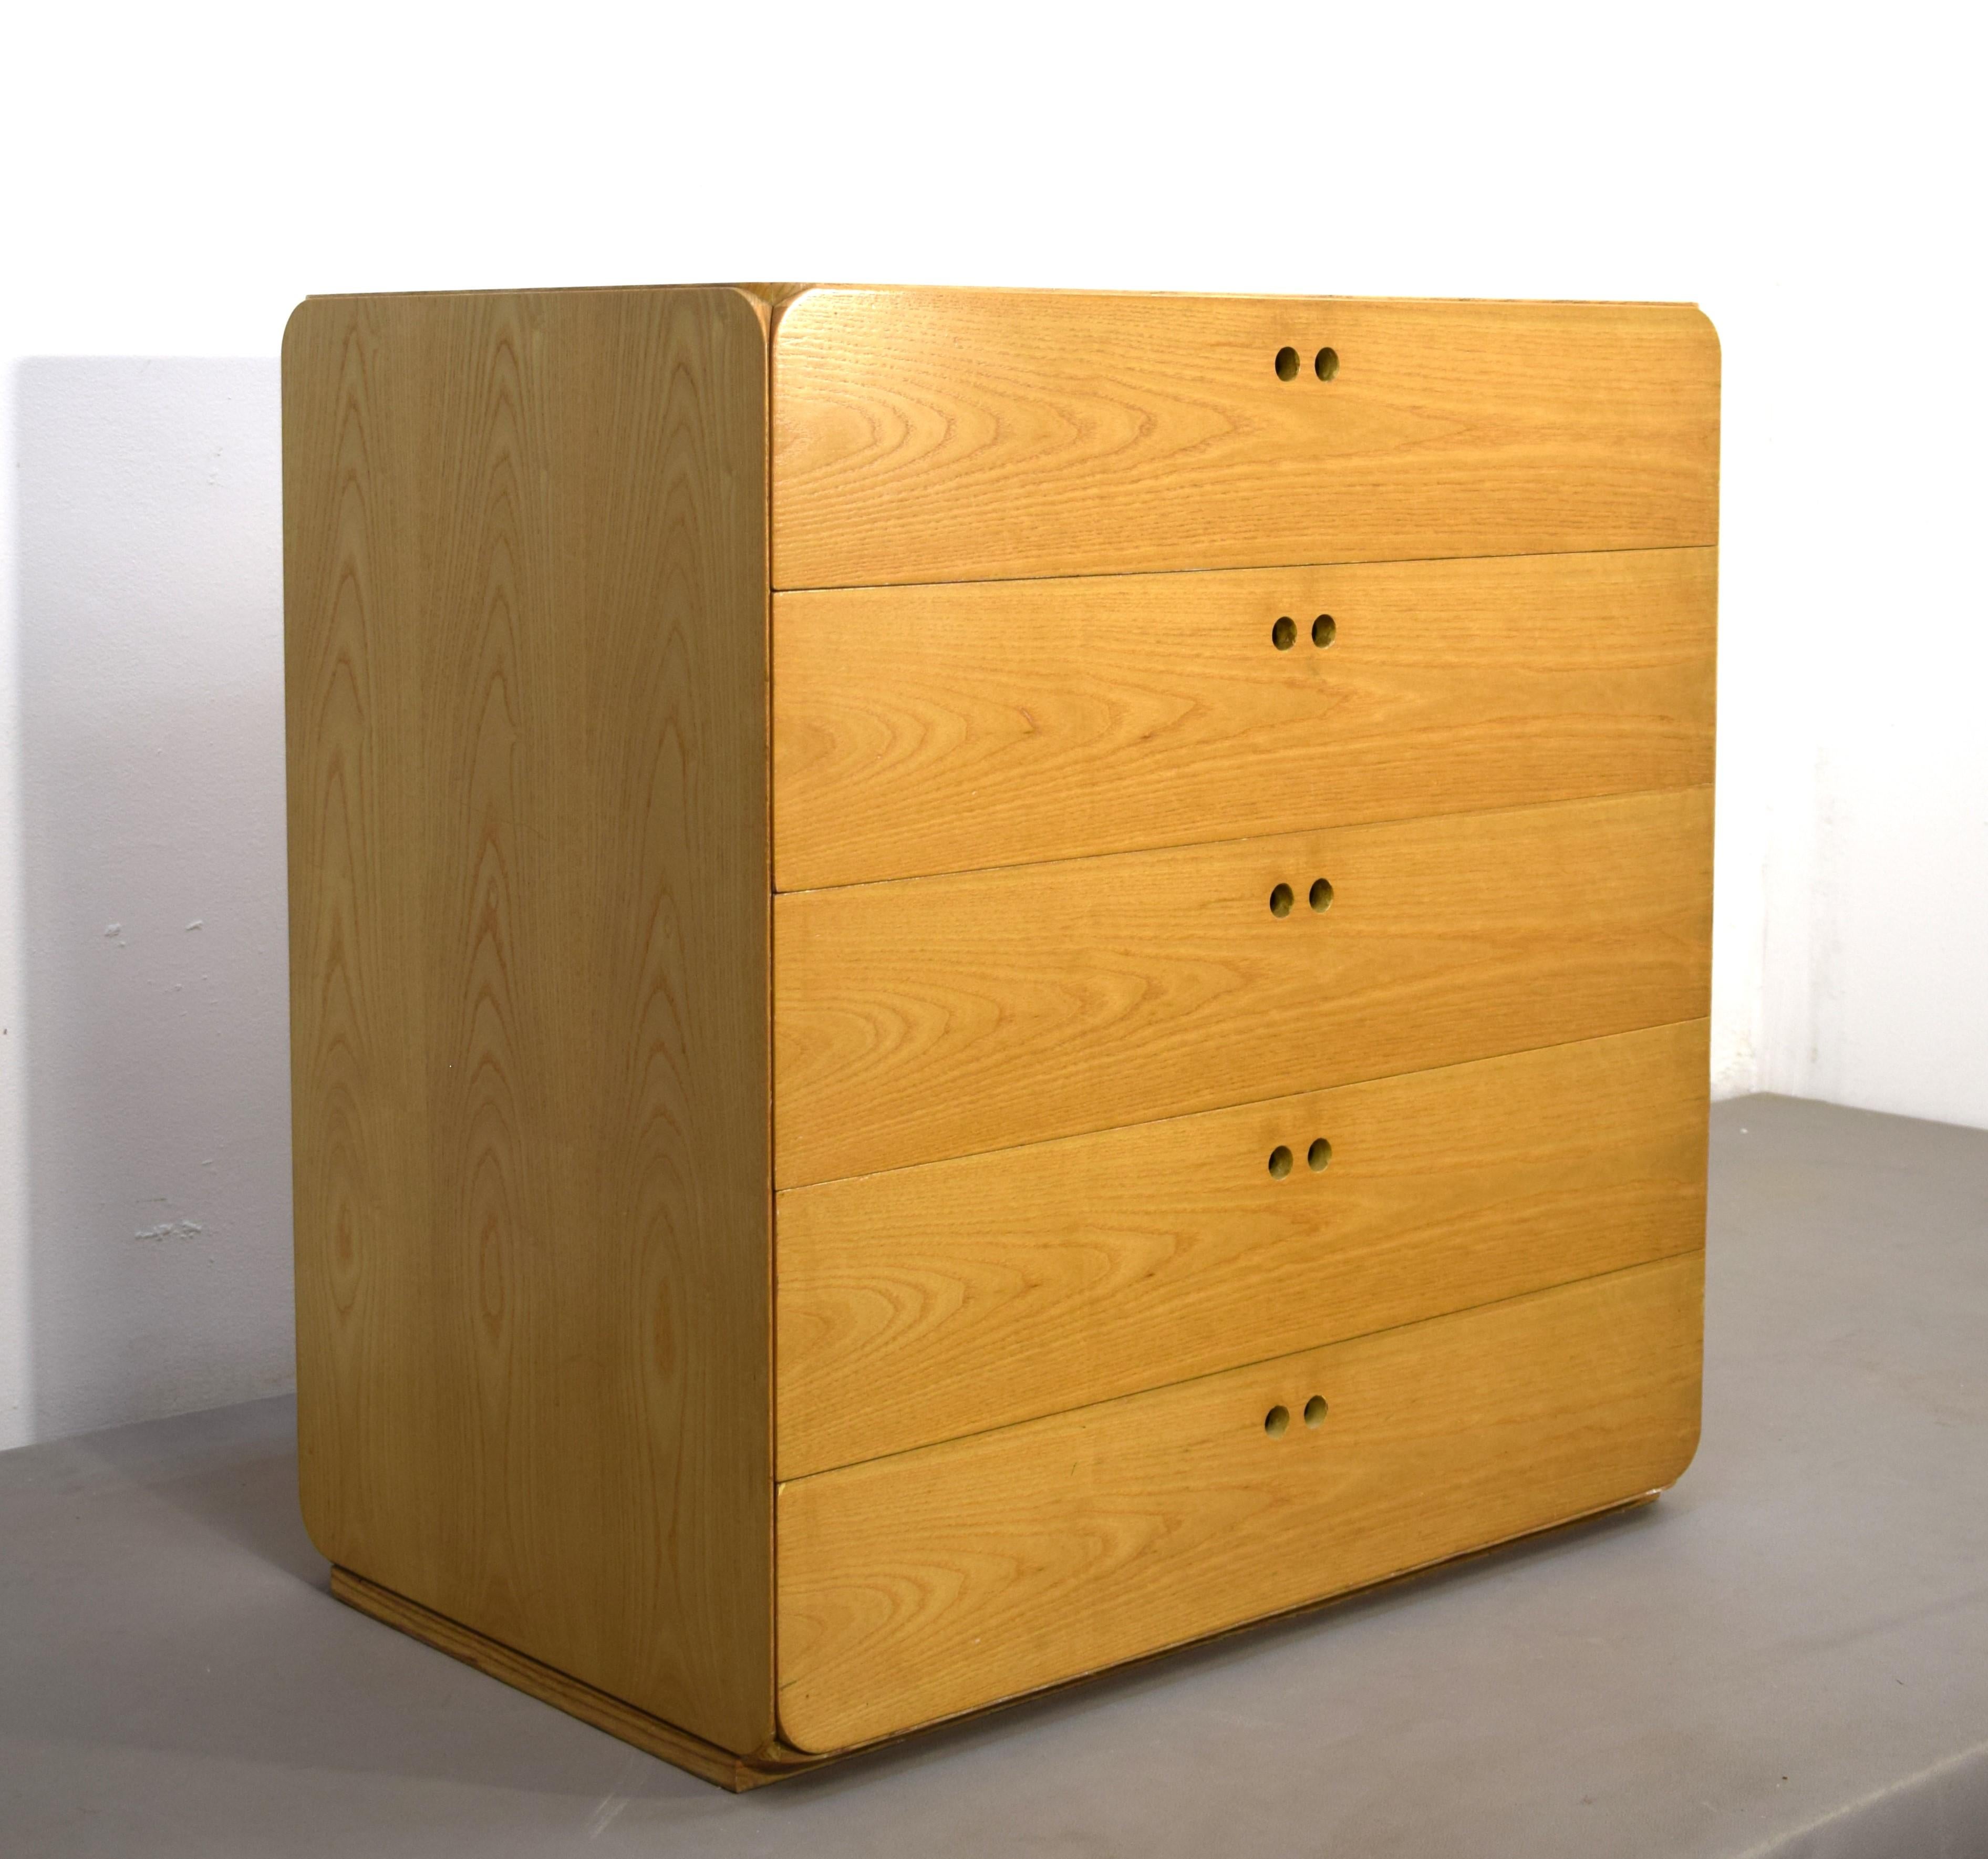 Chest of drawers by Derk Jan De vries, Belgium, 1980s.

Dimensions: H= 78 cm; W= 76 cm; D= 48 cm.